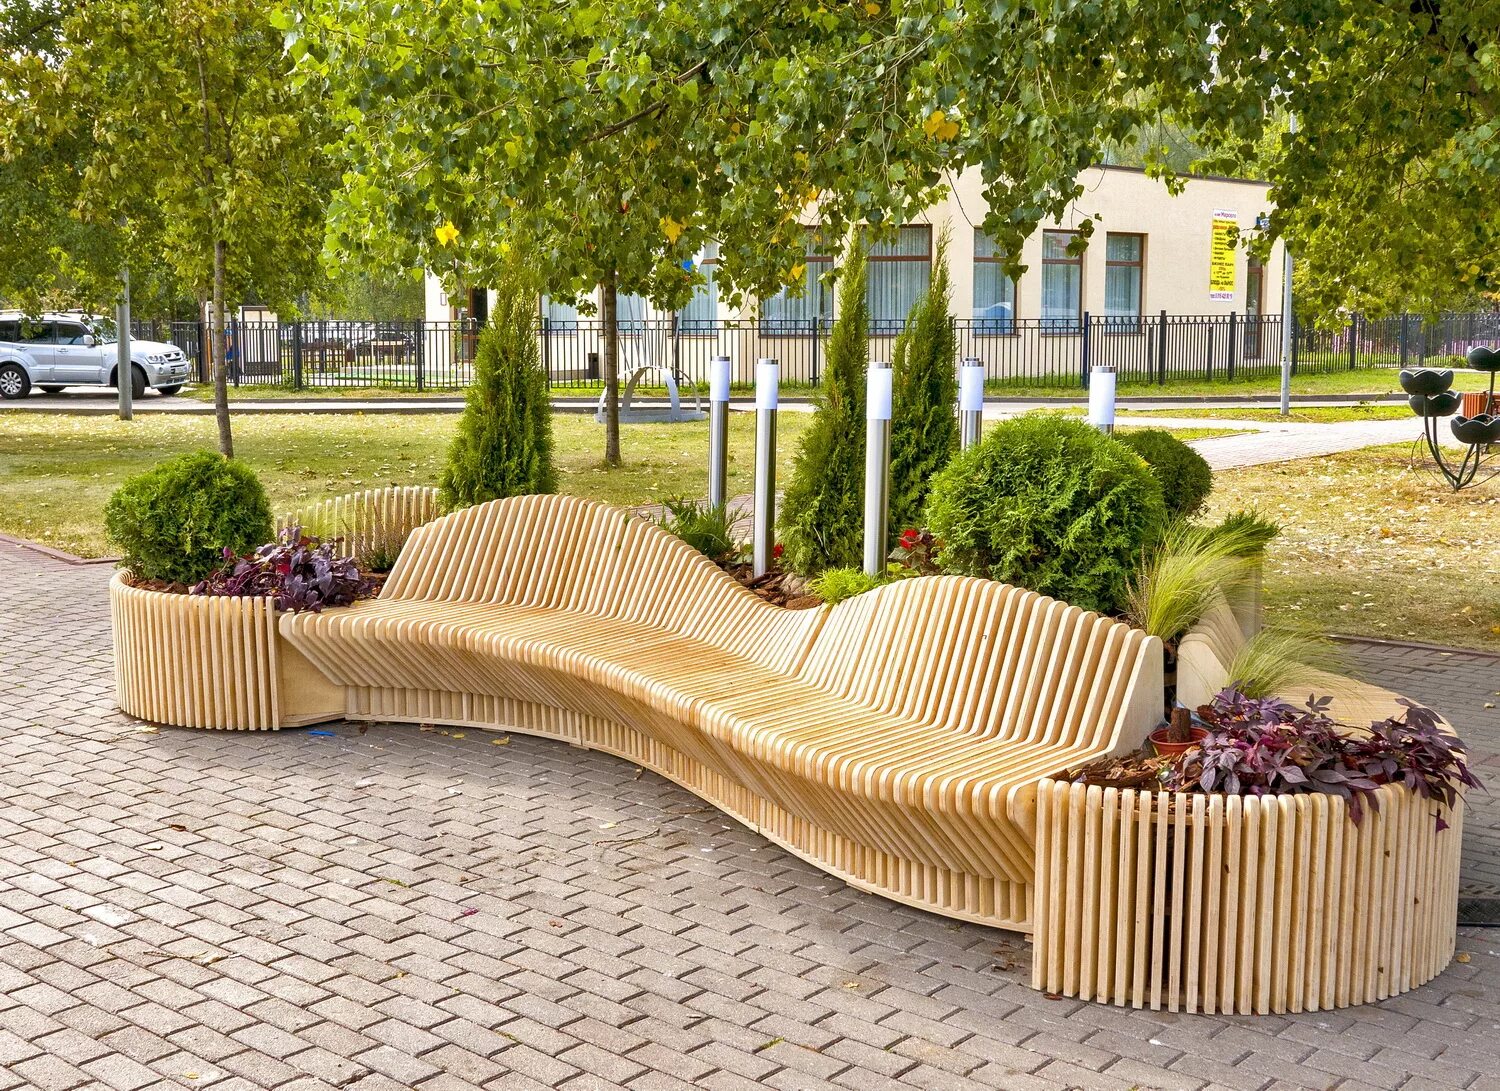 Что можно сделать для города. Пьер Жесткофф ландшафтный Архитектор парки. Параметрическая скамейка "Bench w2". Уличная скамейка Bench bch150 скамья МАФ Маркет. Малые архитектурные формы экостиль.